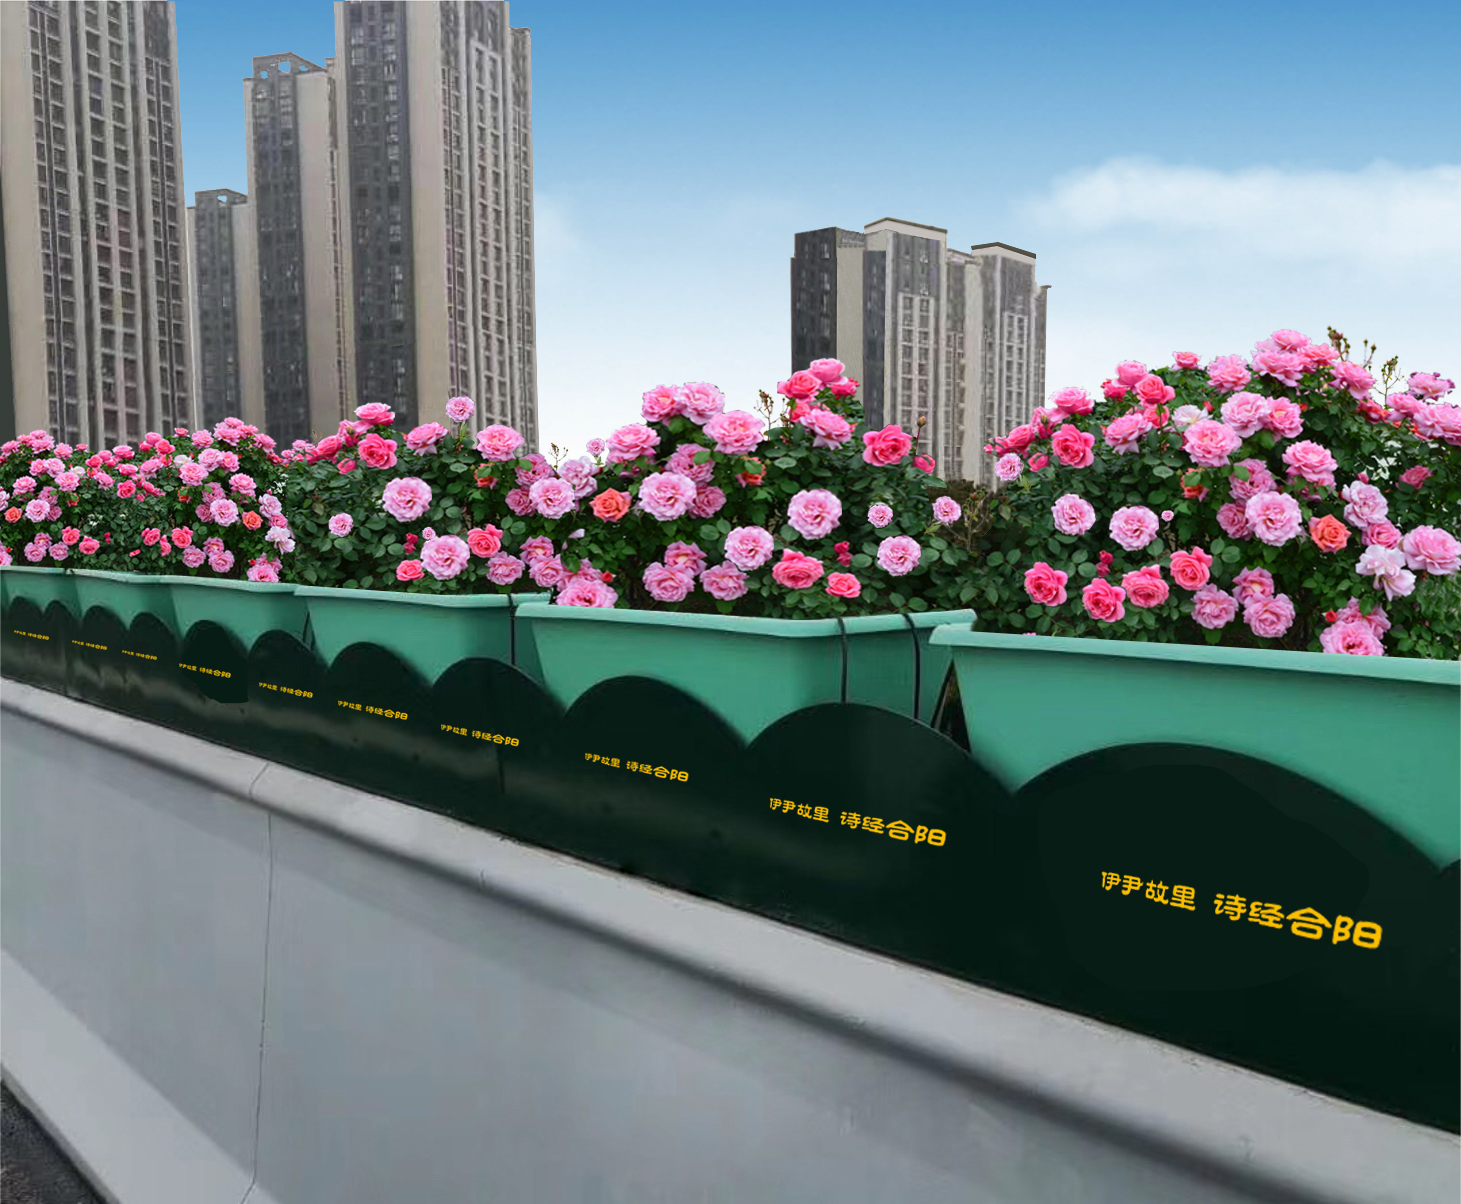 植物墙、桥梁立体绿化增添城市生态魅力.jpg